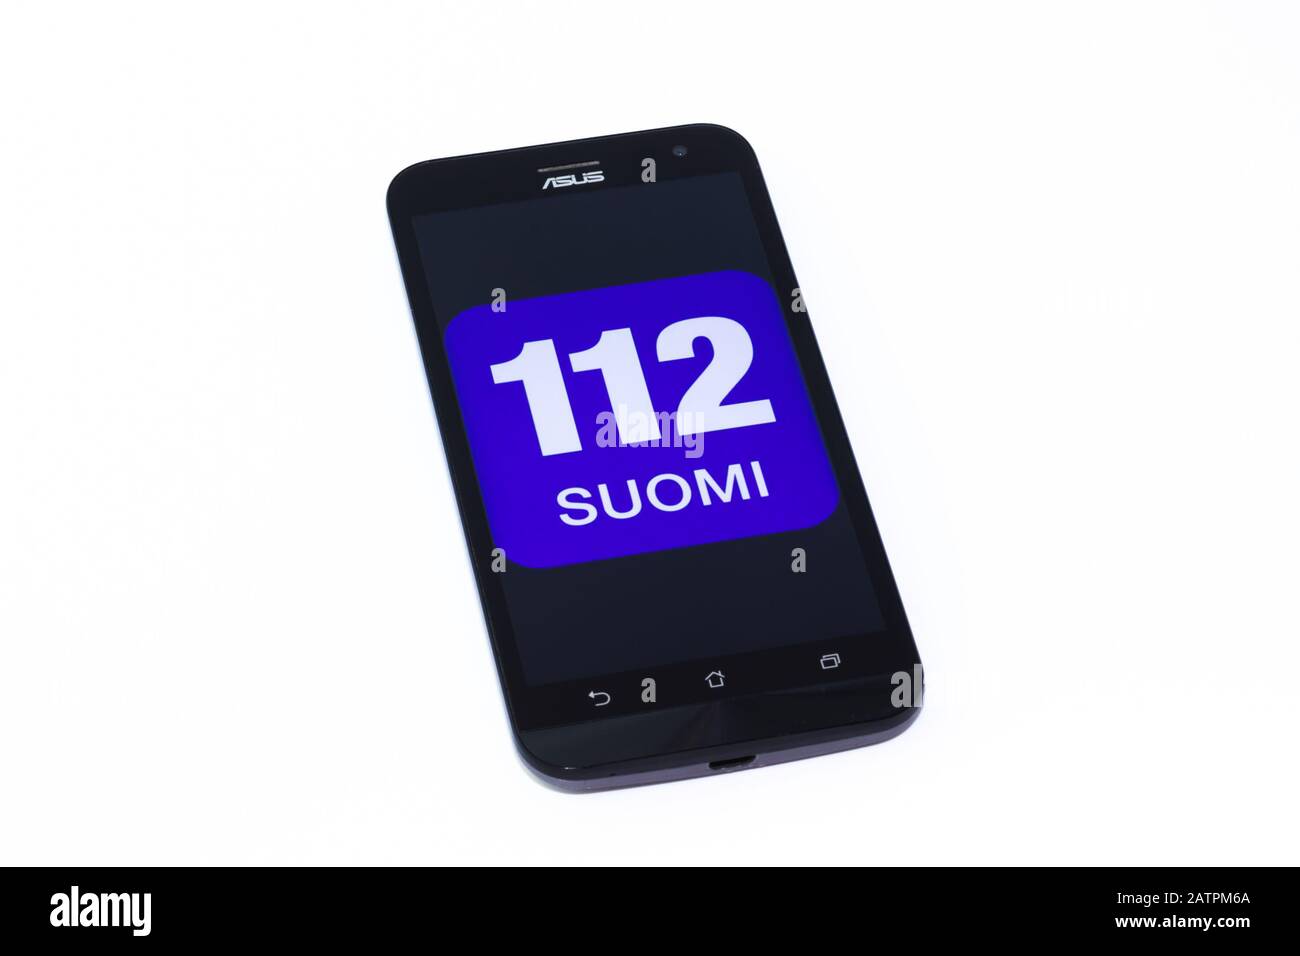 Kouvola, Finlande - 23 janvier 2020: 112 logo de l'app Suomi sur l'écran du smartphone Asus Banque D'Images